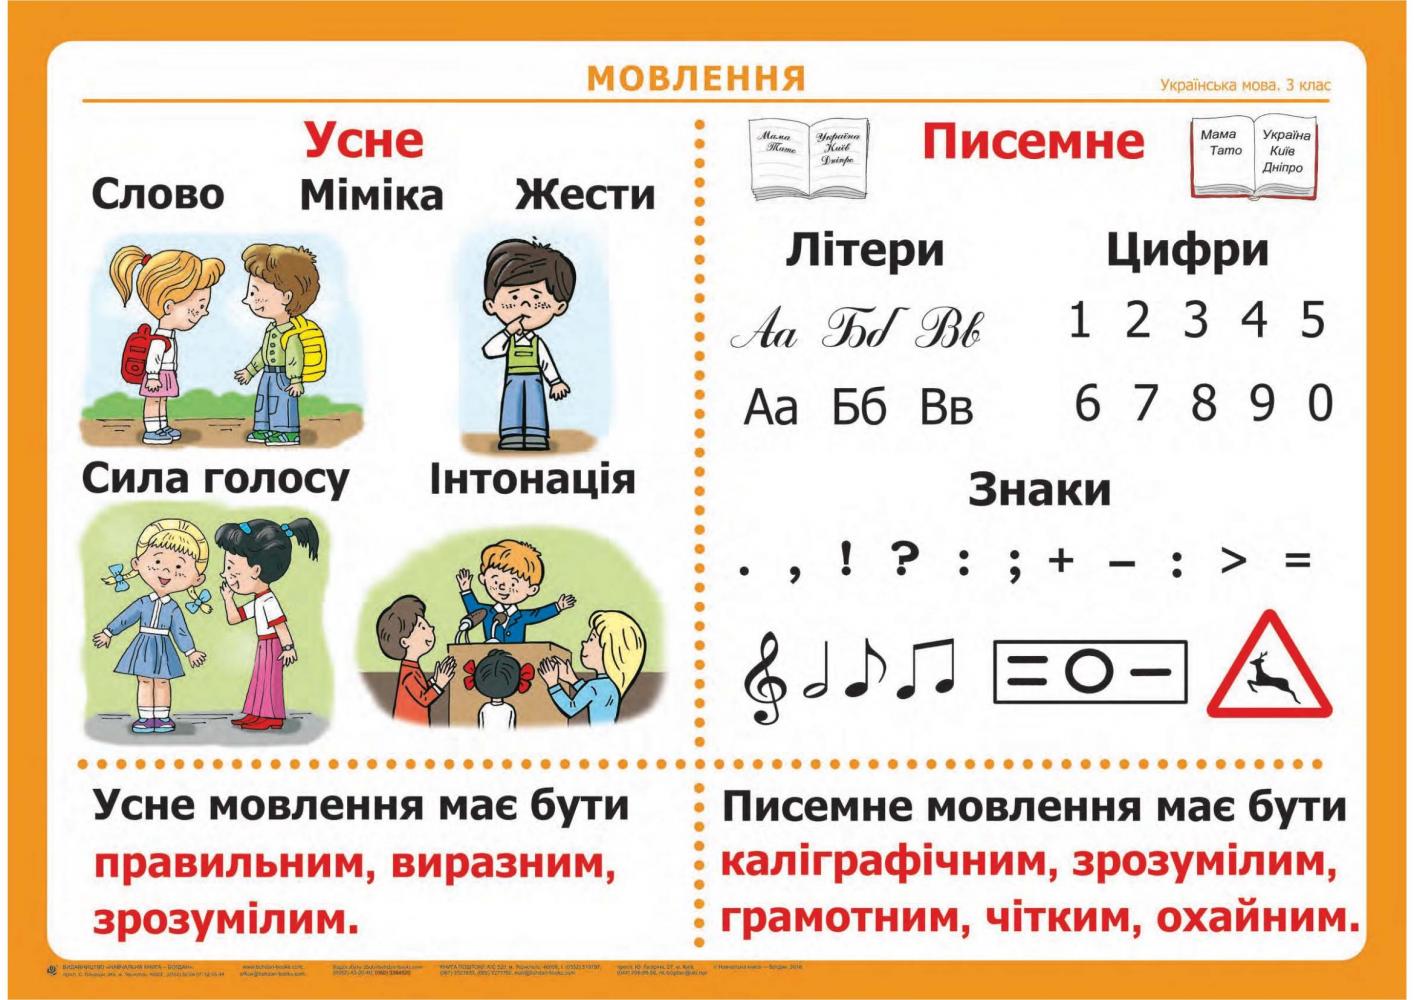 Укр мов 4. Усне і писемне мовлення. Укр мова 3 клас. Частини мови таблиця. Усне мовлення це для 3 класса.